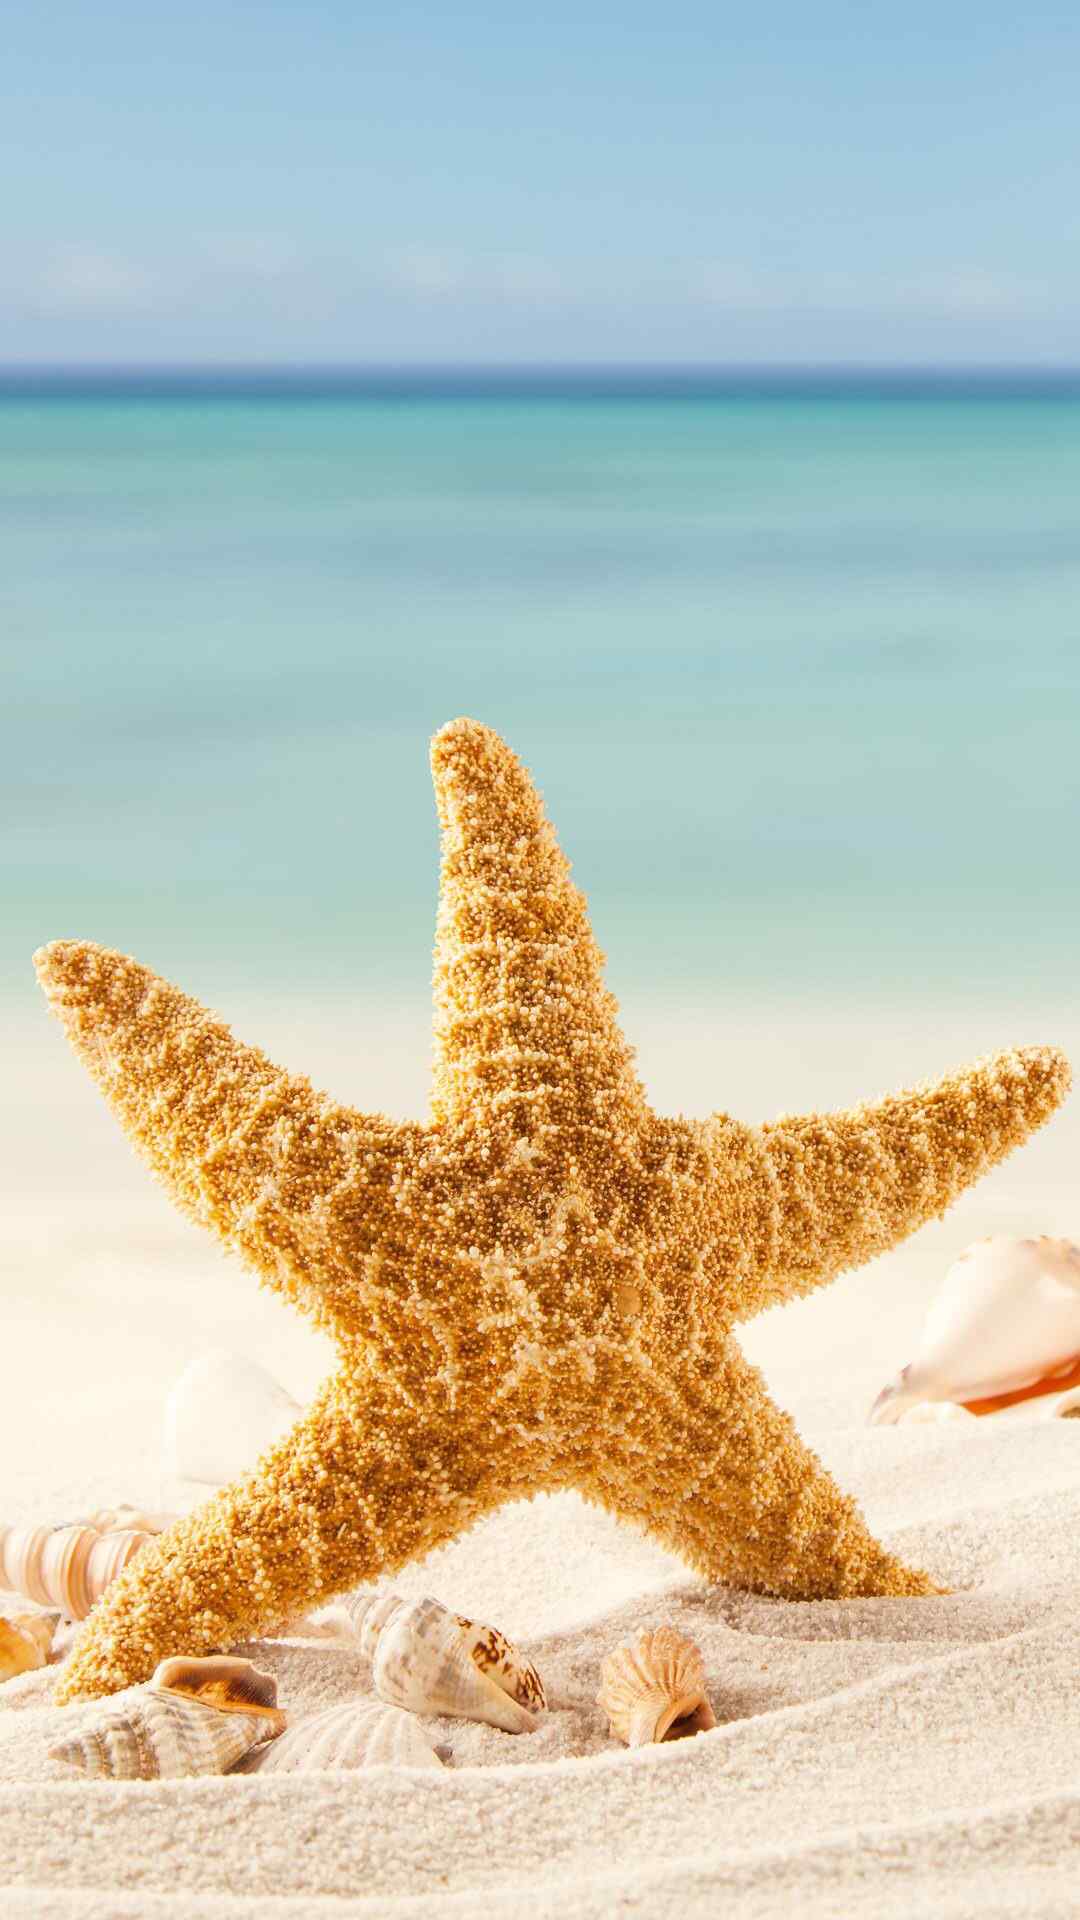 沙滩夏日海星清新美图高清手机壁纸